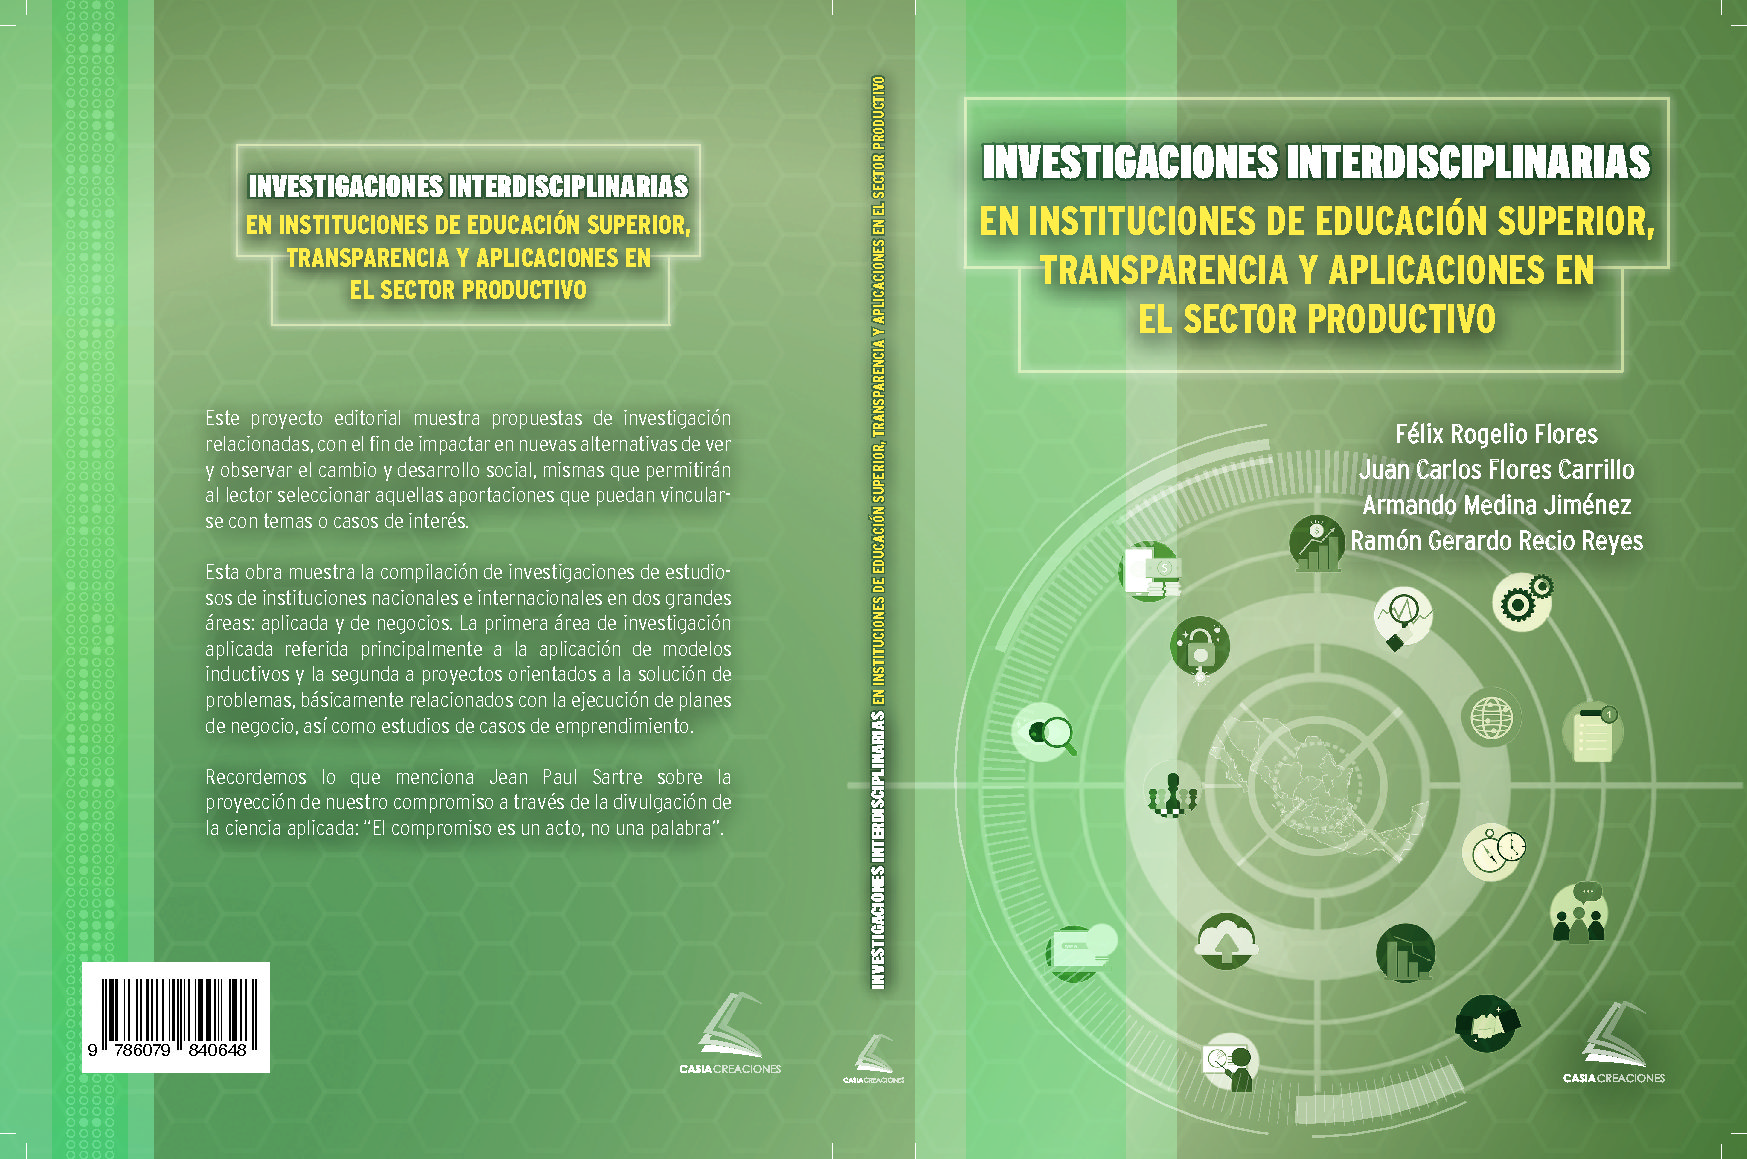 INVESTIGACIONES INTERDISCIPLINARIAS EN INSTITUCIONES DE EDUCACIÓN SUPERIOR, TRANSPARENCIA Y APLICACIONES EN EL SECTOR PRODUCTIVO